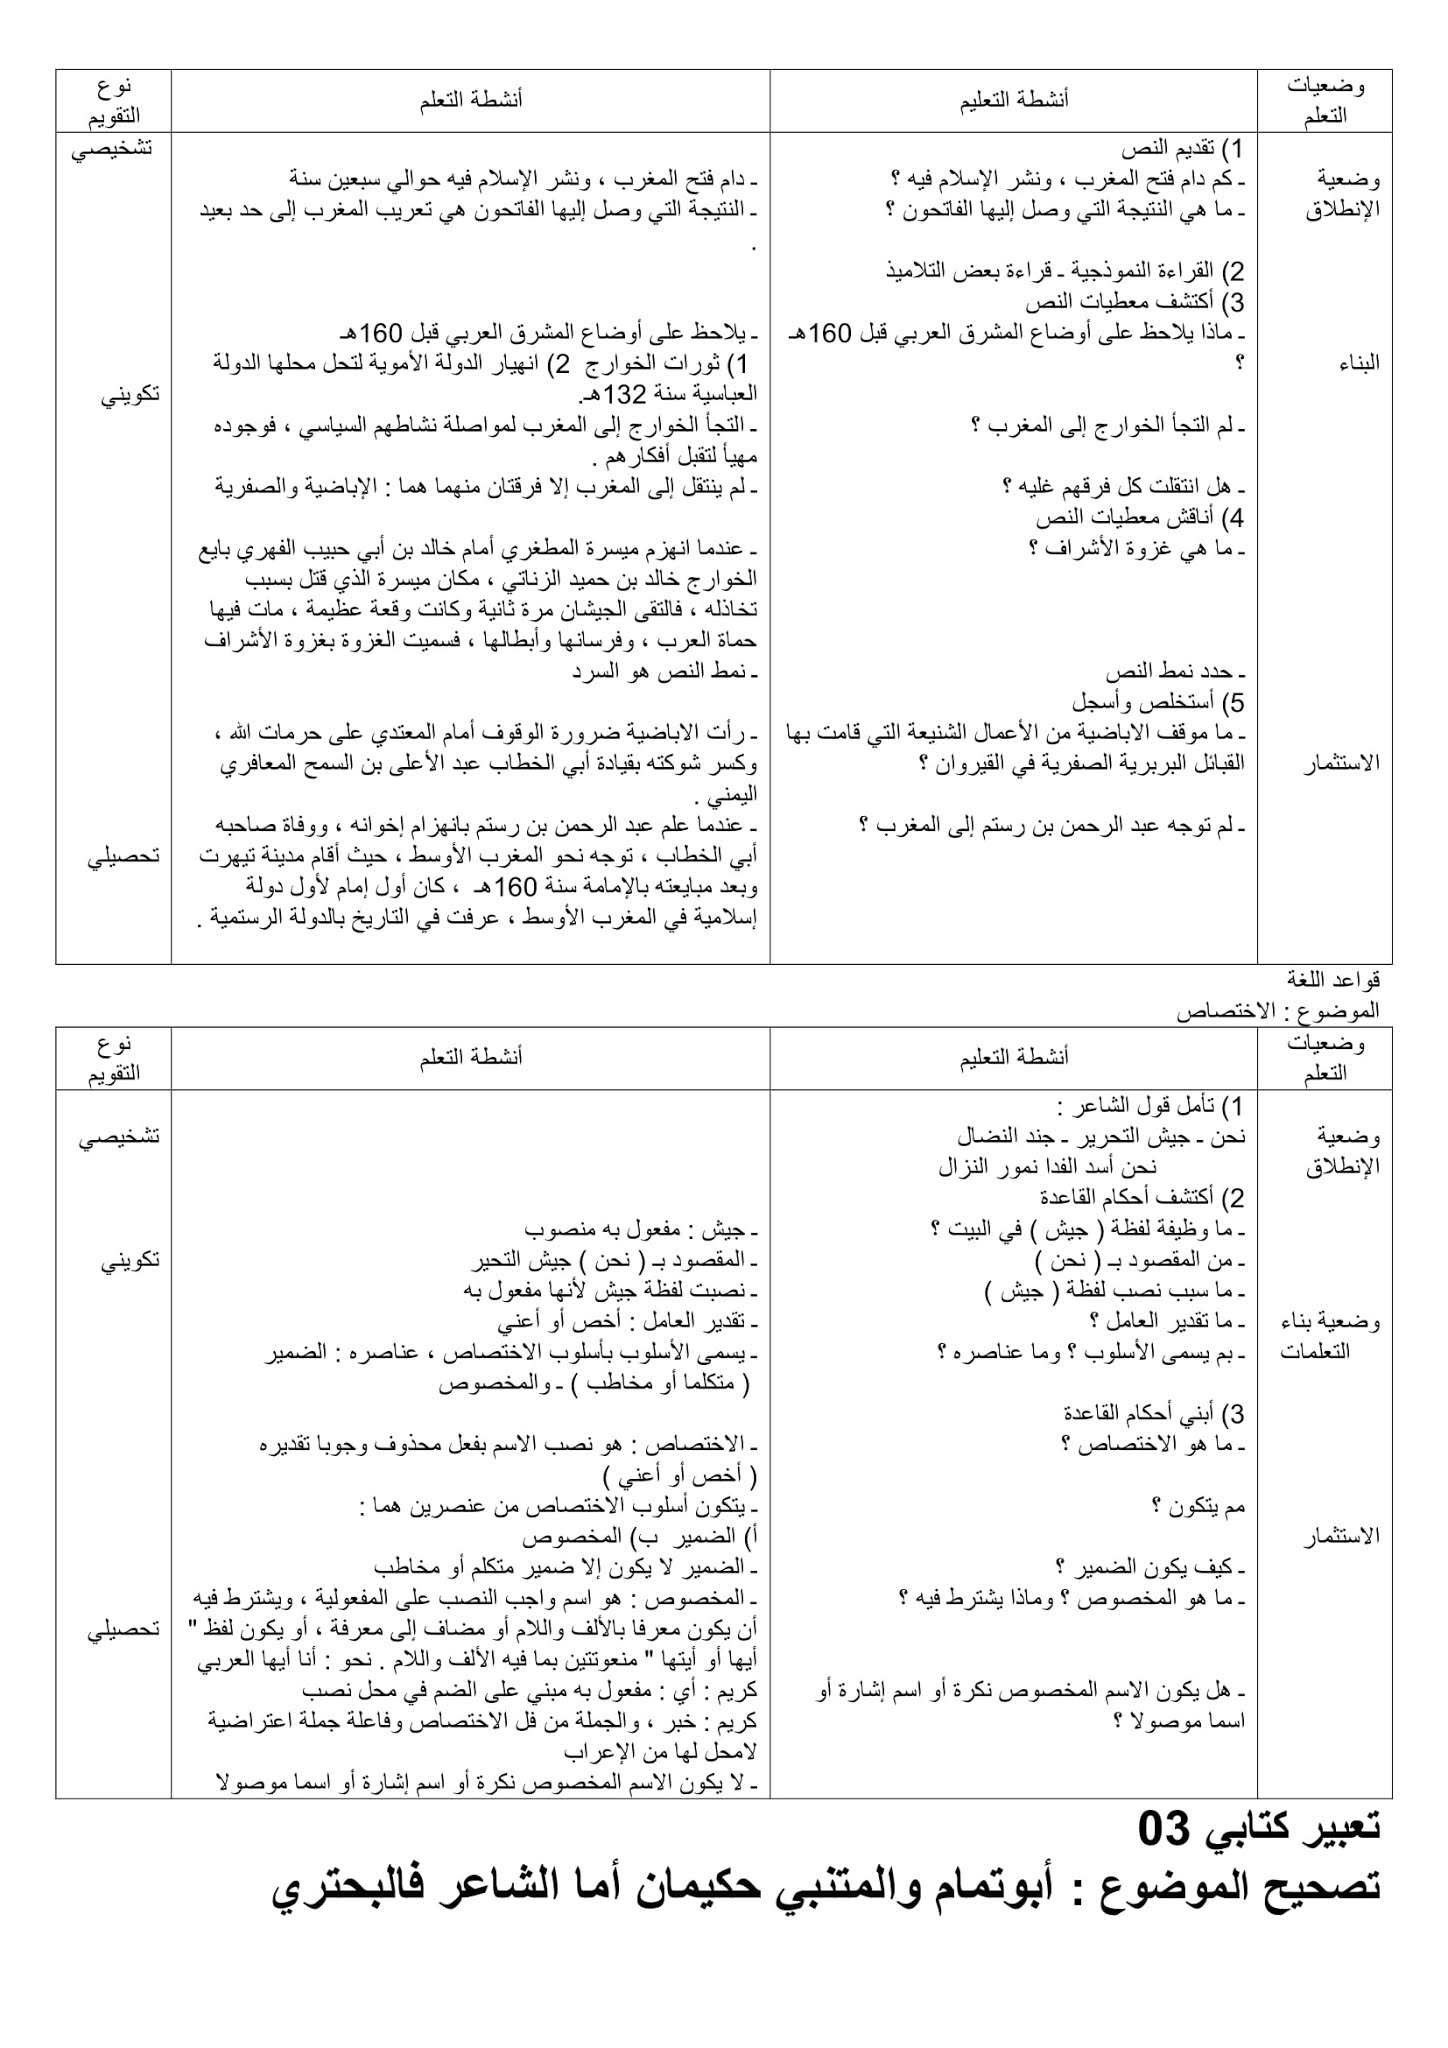 تحضير نص استقلال بلاد المغرب عن المشرق 2 ثانوي علمي صفحة 114 من الكتاب المدرسي